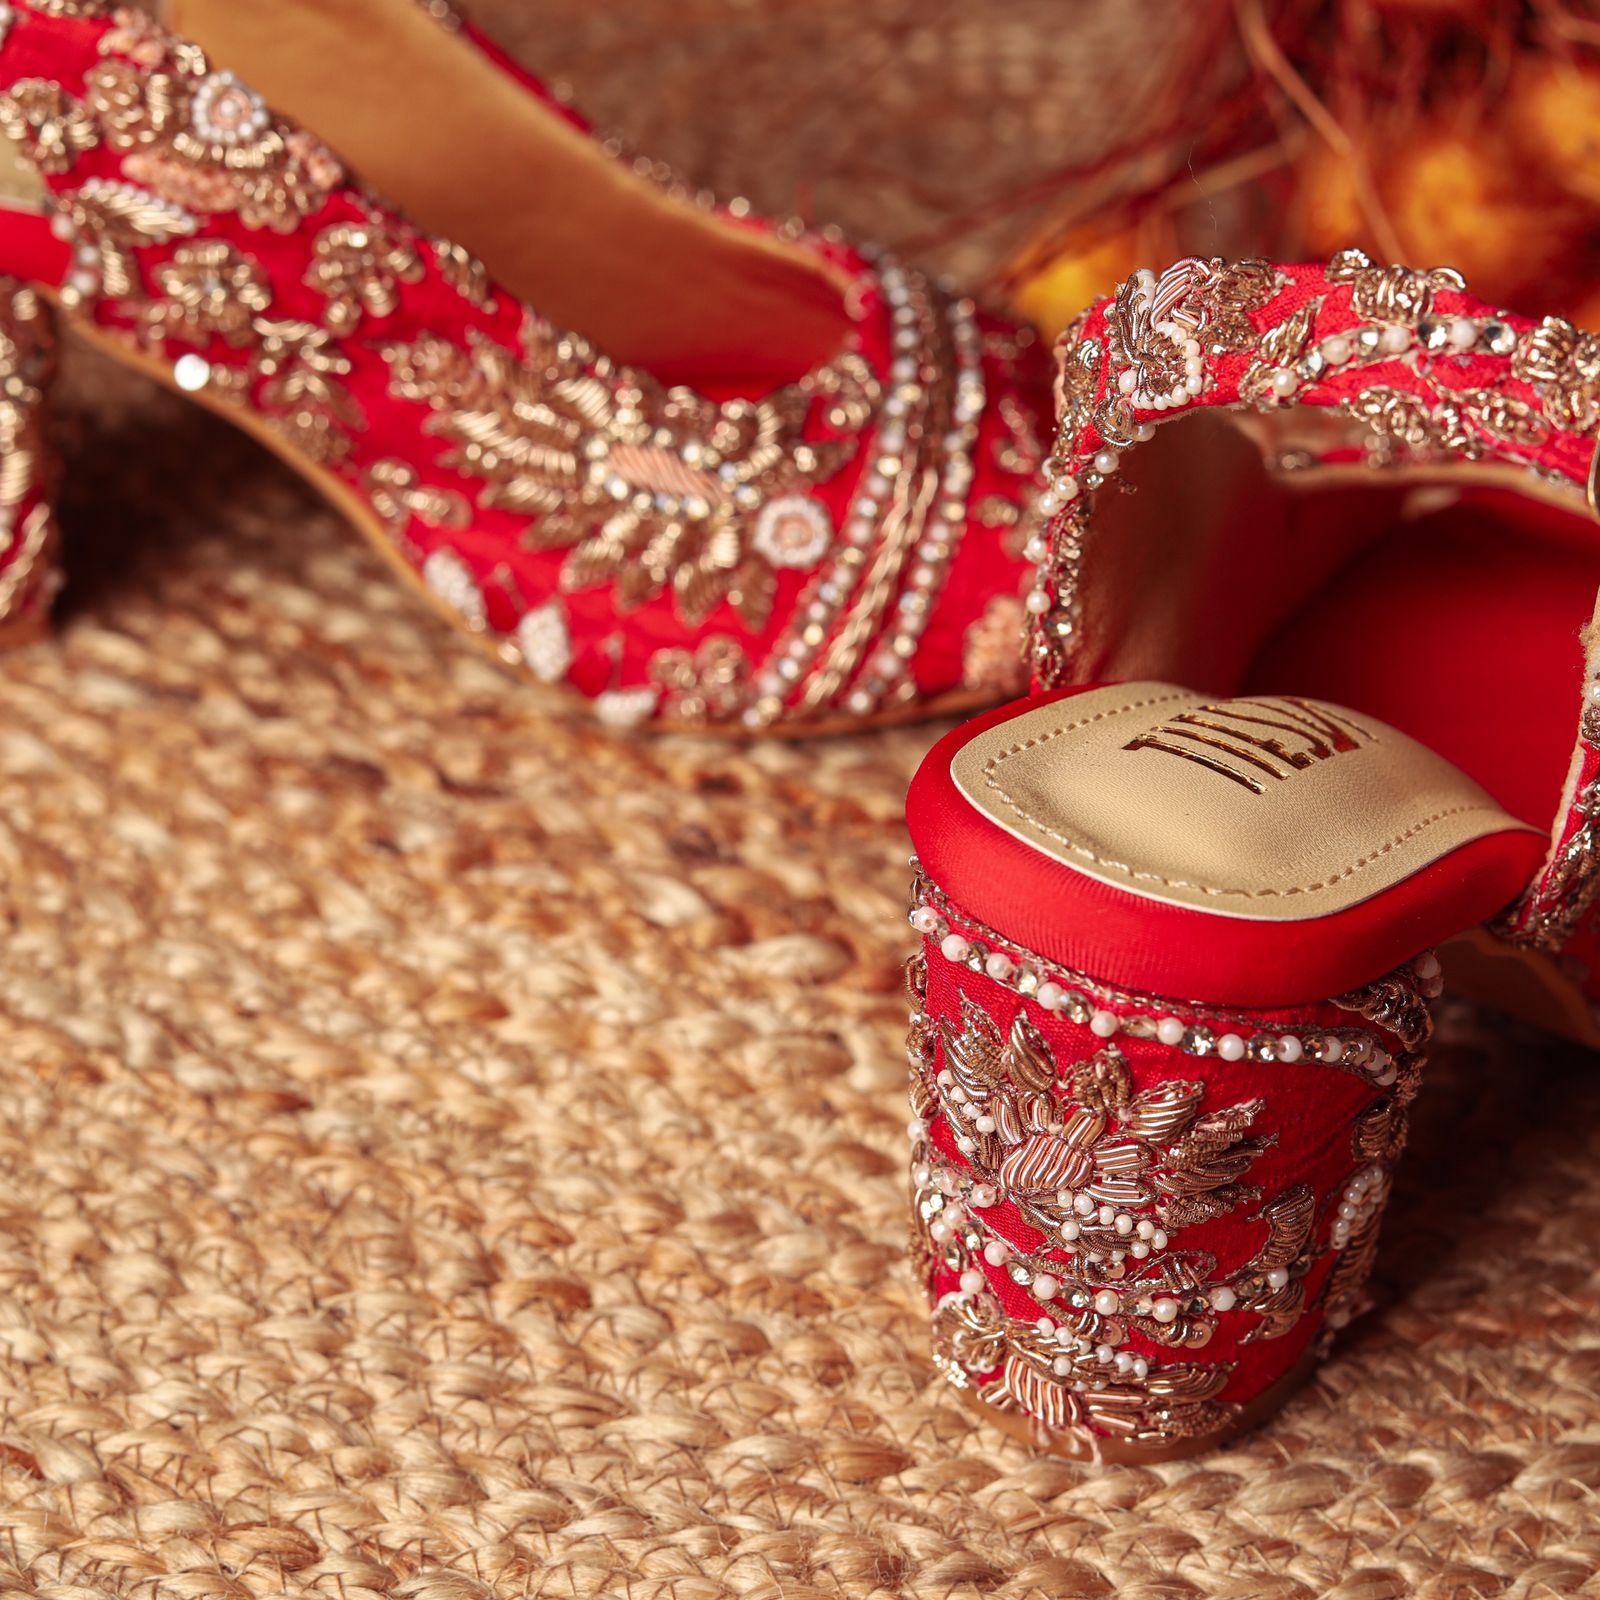 Block Heel Wedding Shoes | Bridal Wedges & Heels by Charlotte Mills